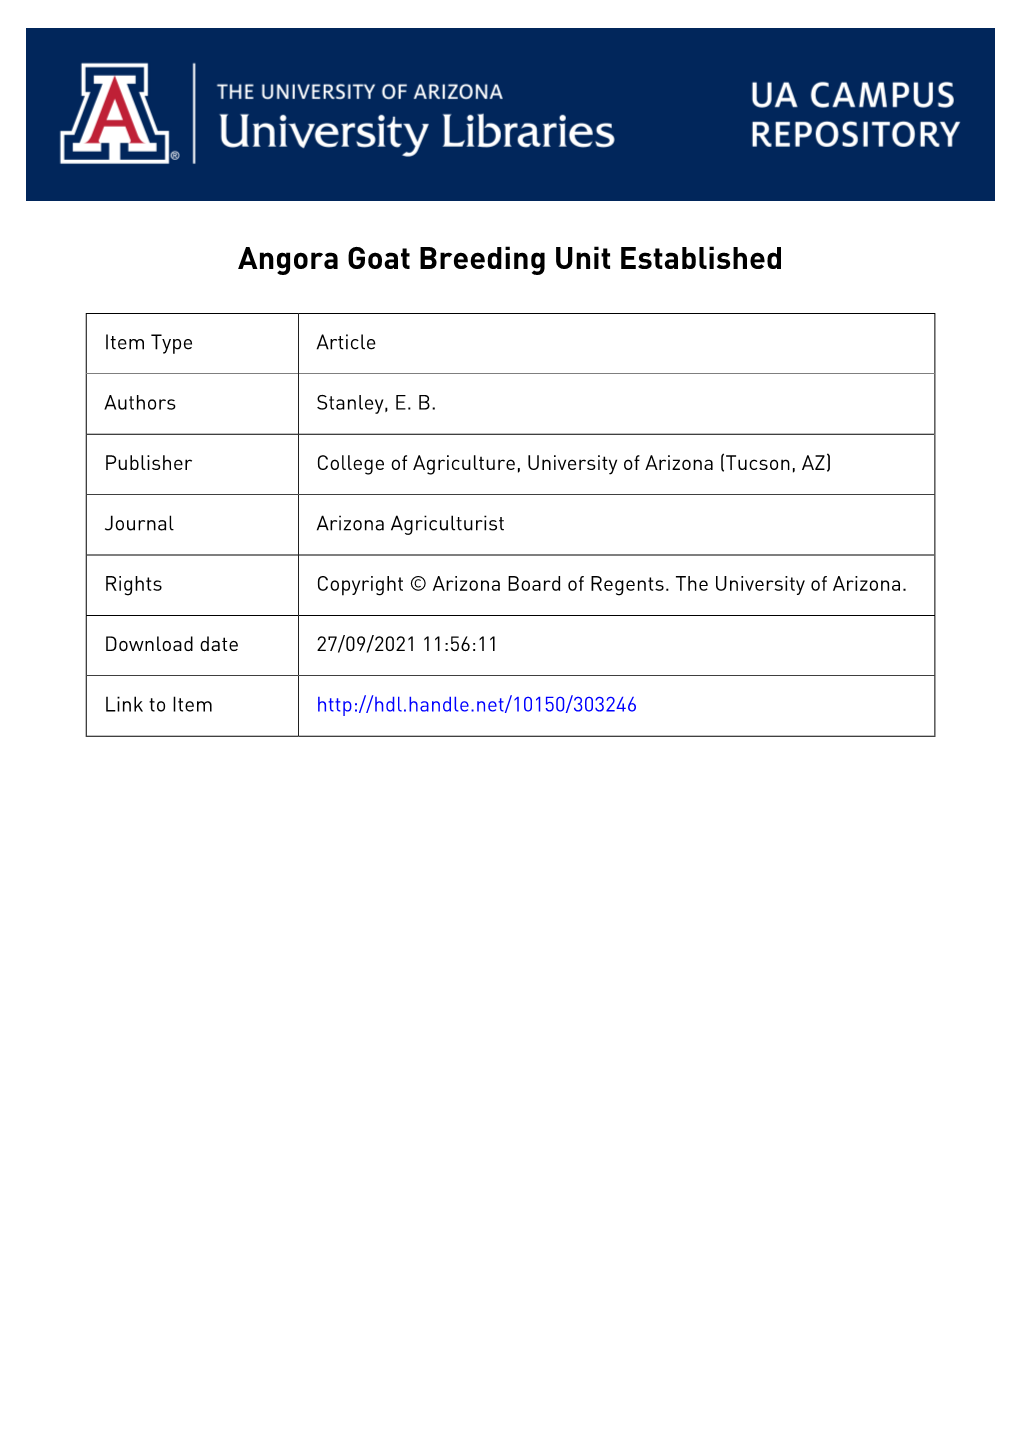 Angora Goat Breeding Unit Established